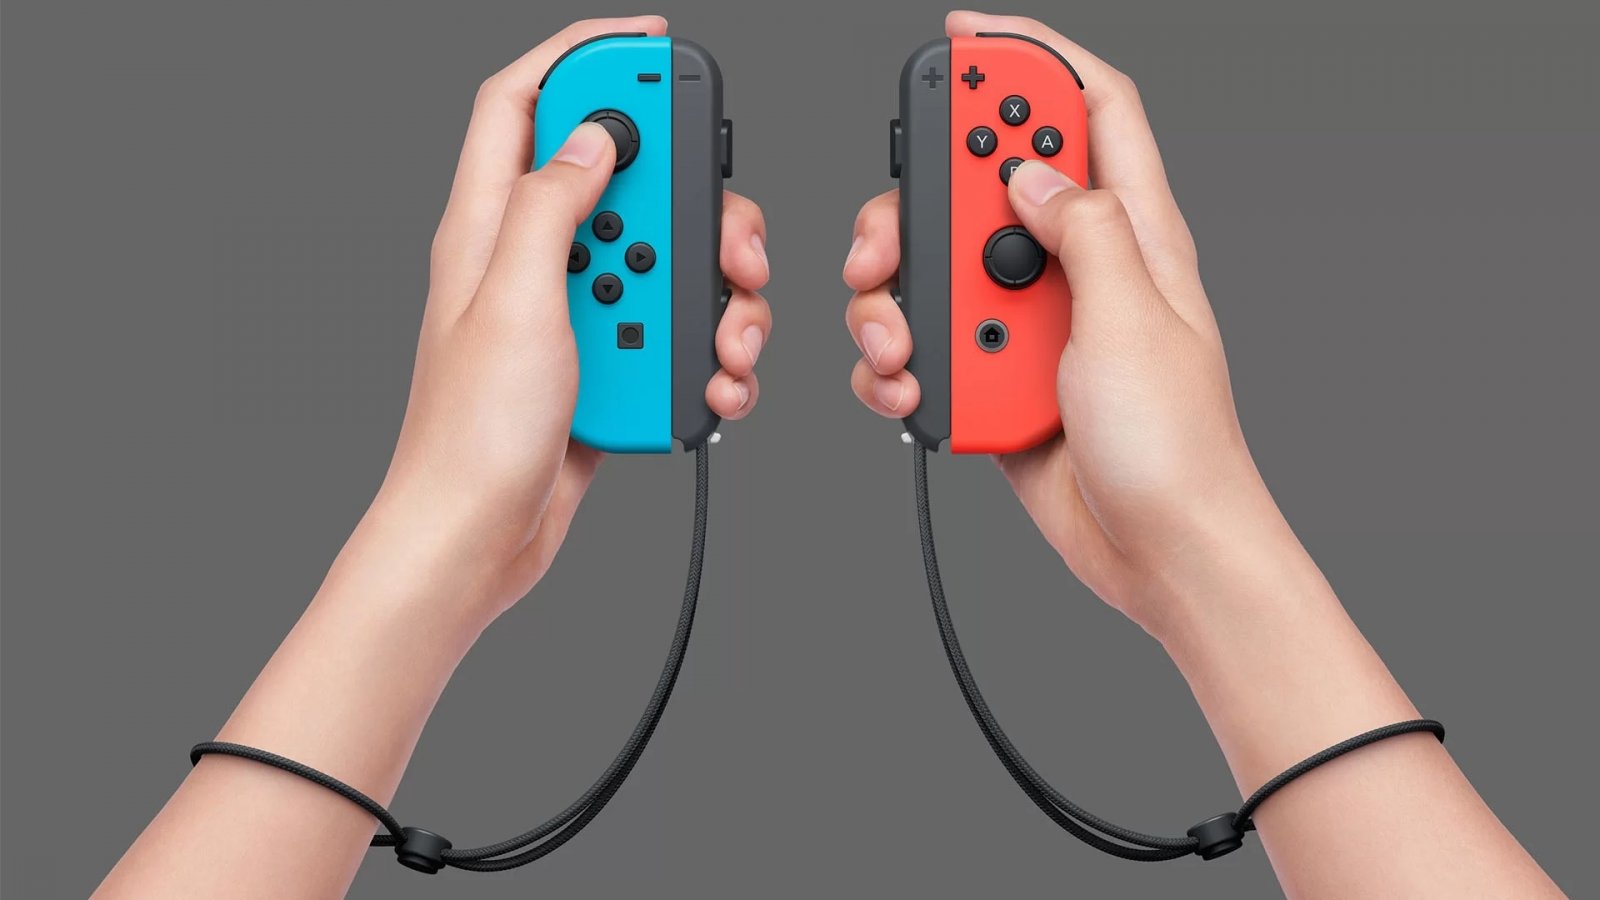 Nintendo riparerà gratuitamente i Joy-Con di Switch affetti da drifting anche fuori garanzia